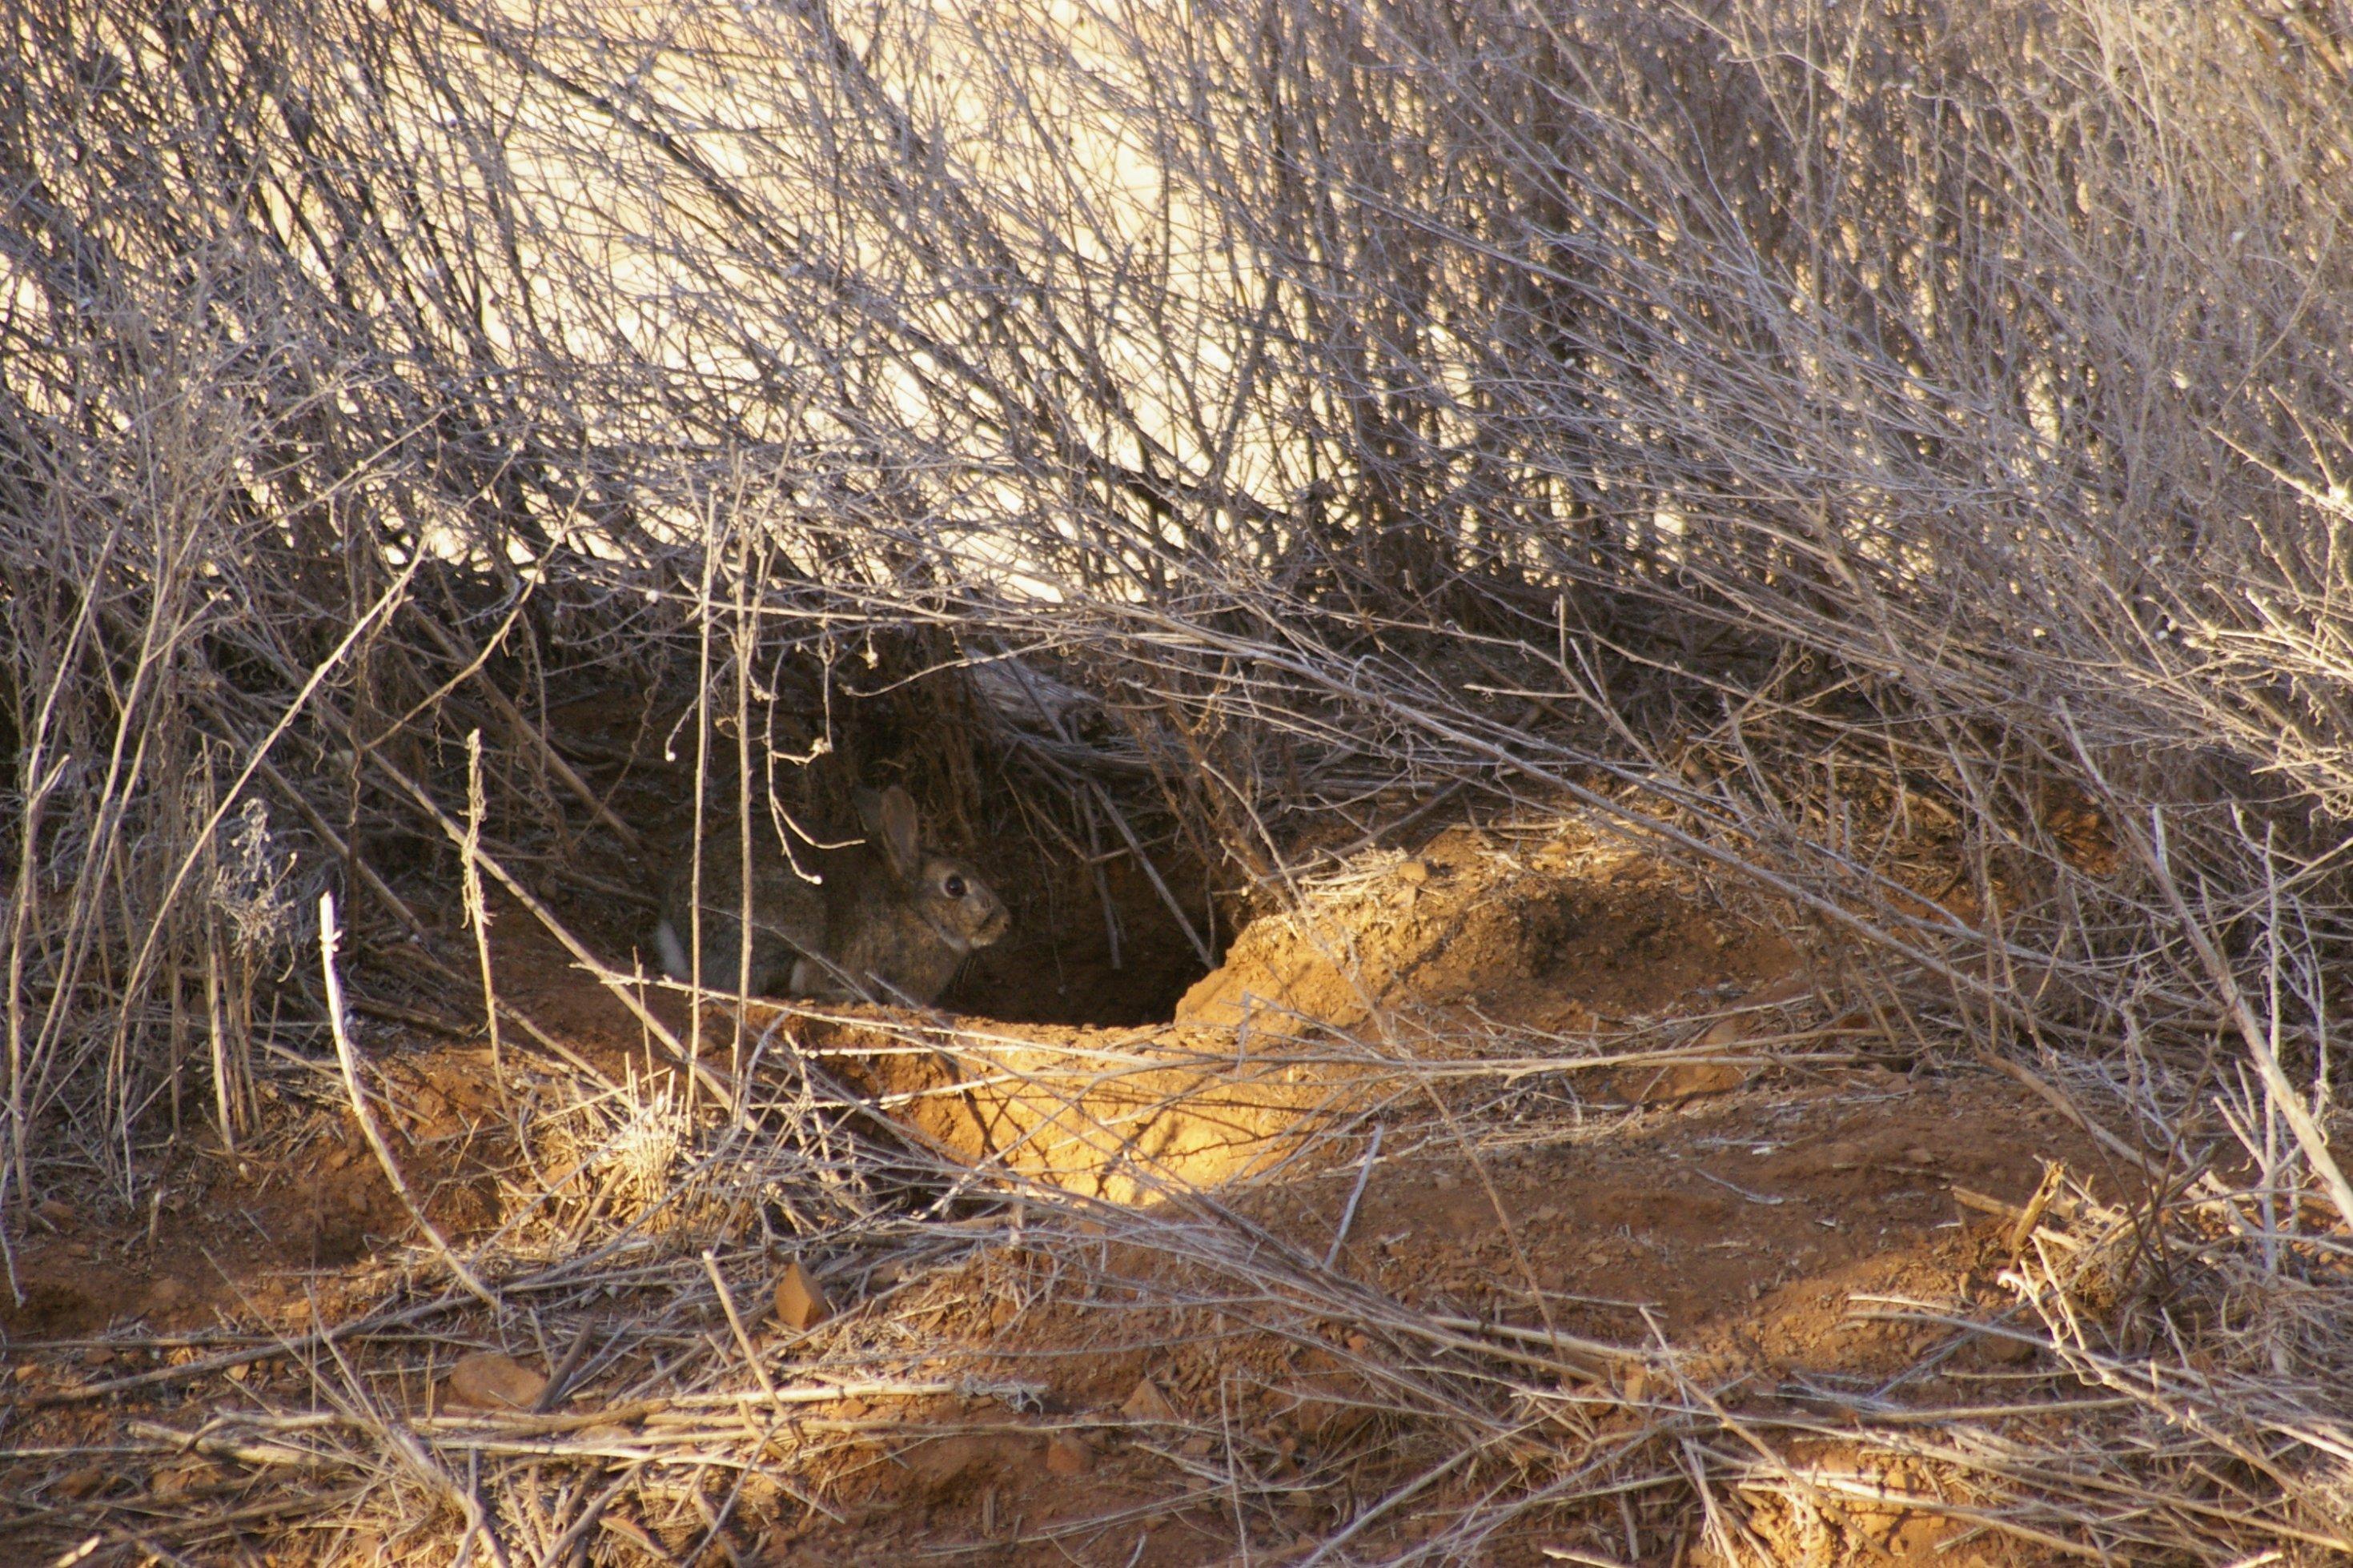 Ein graues Kaninchen sitzt im Eingang zu seinem Bau in ockerfarbener staubiger Erde vor verdorrtem Grasauf einer australischen Farm während einer Dürre in Australien.wild rabbit on a drought stricken farm at the door to it's warren in rural New South Wales, Australia